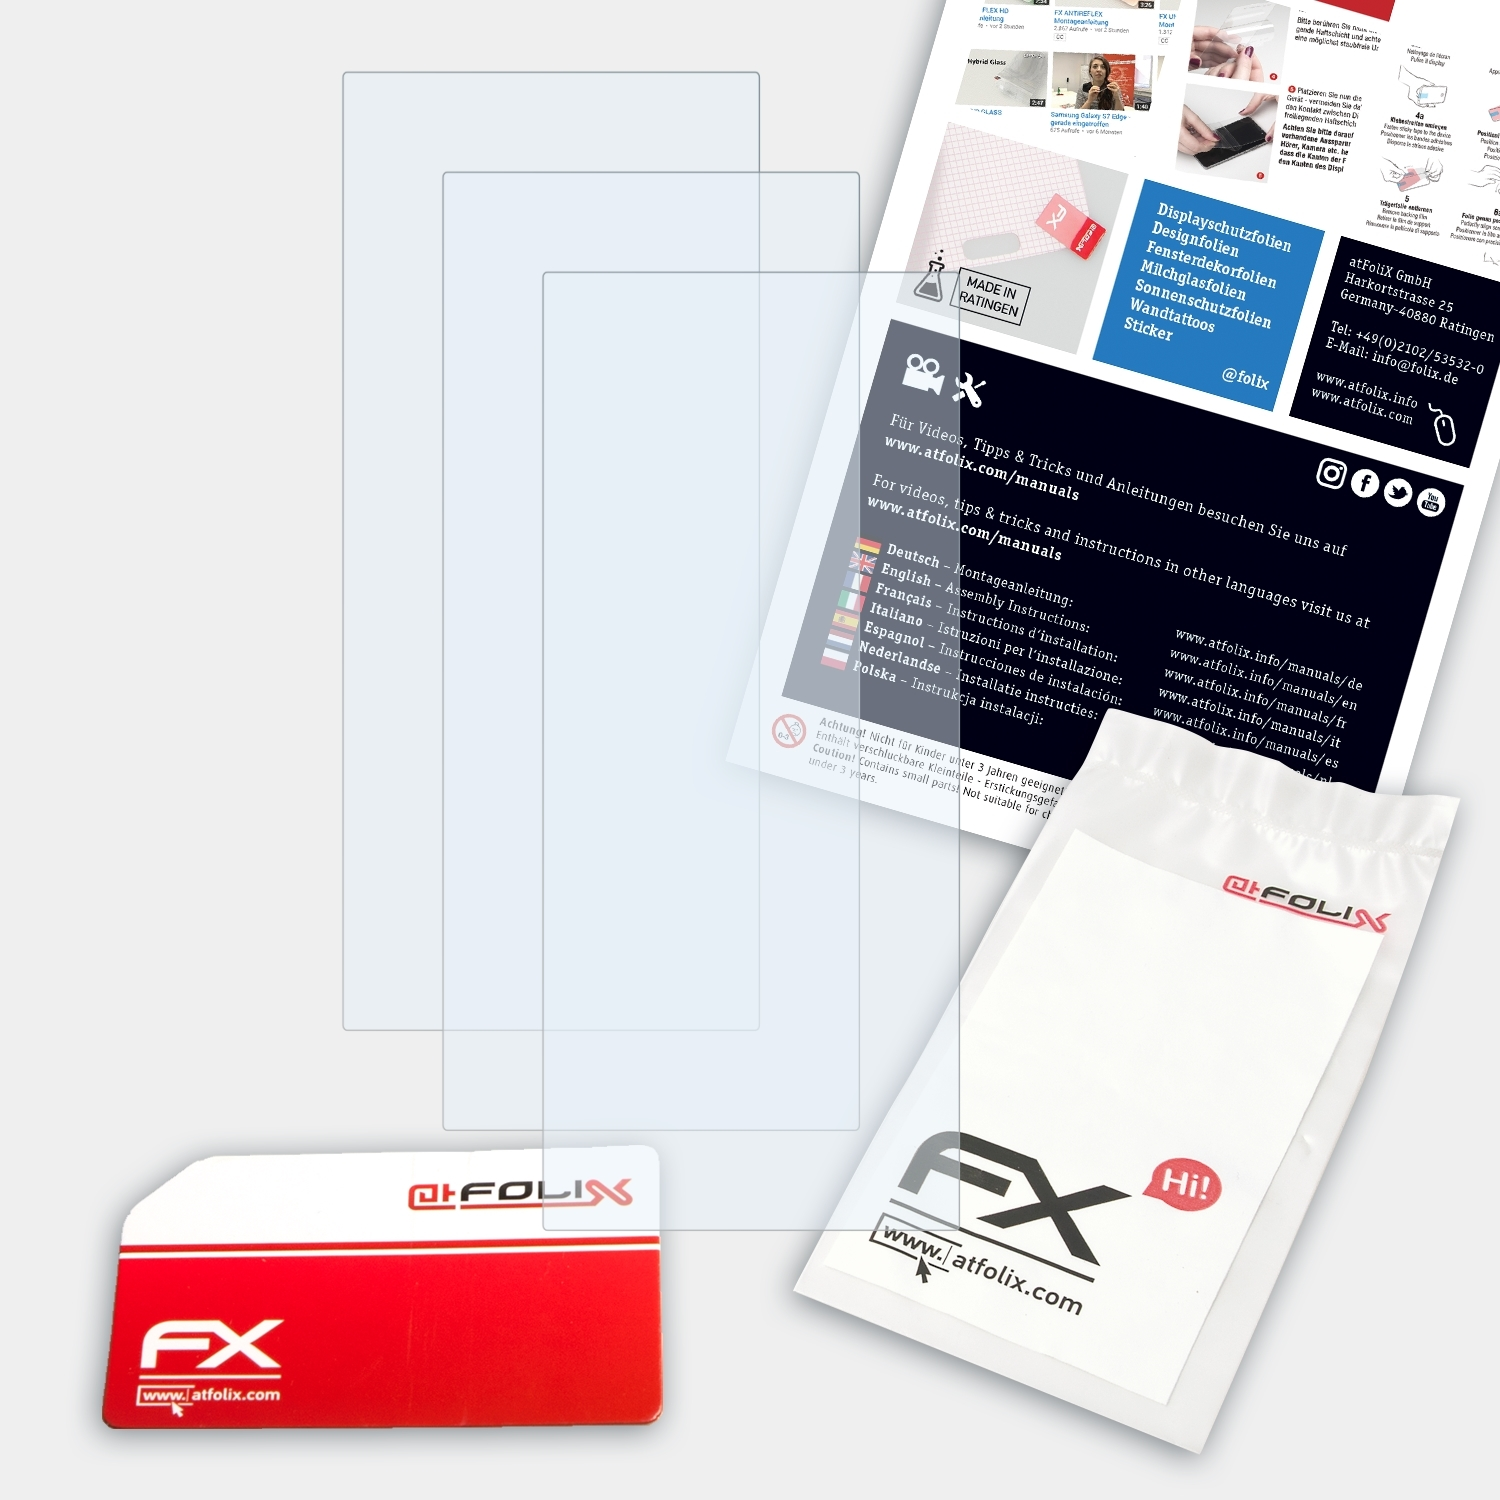 FX-Clear Displayschutz(für 3x Approach ATFOLIX X10) Garmin